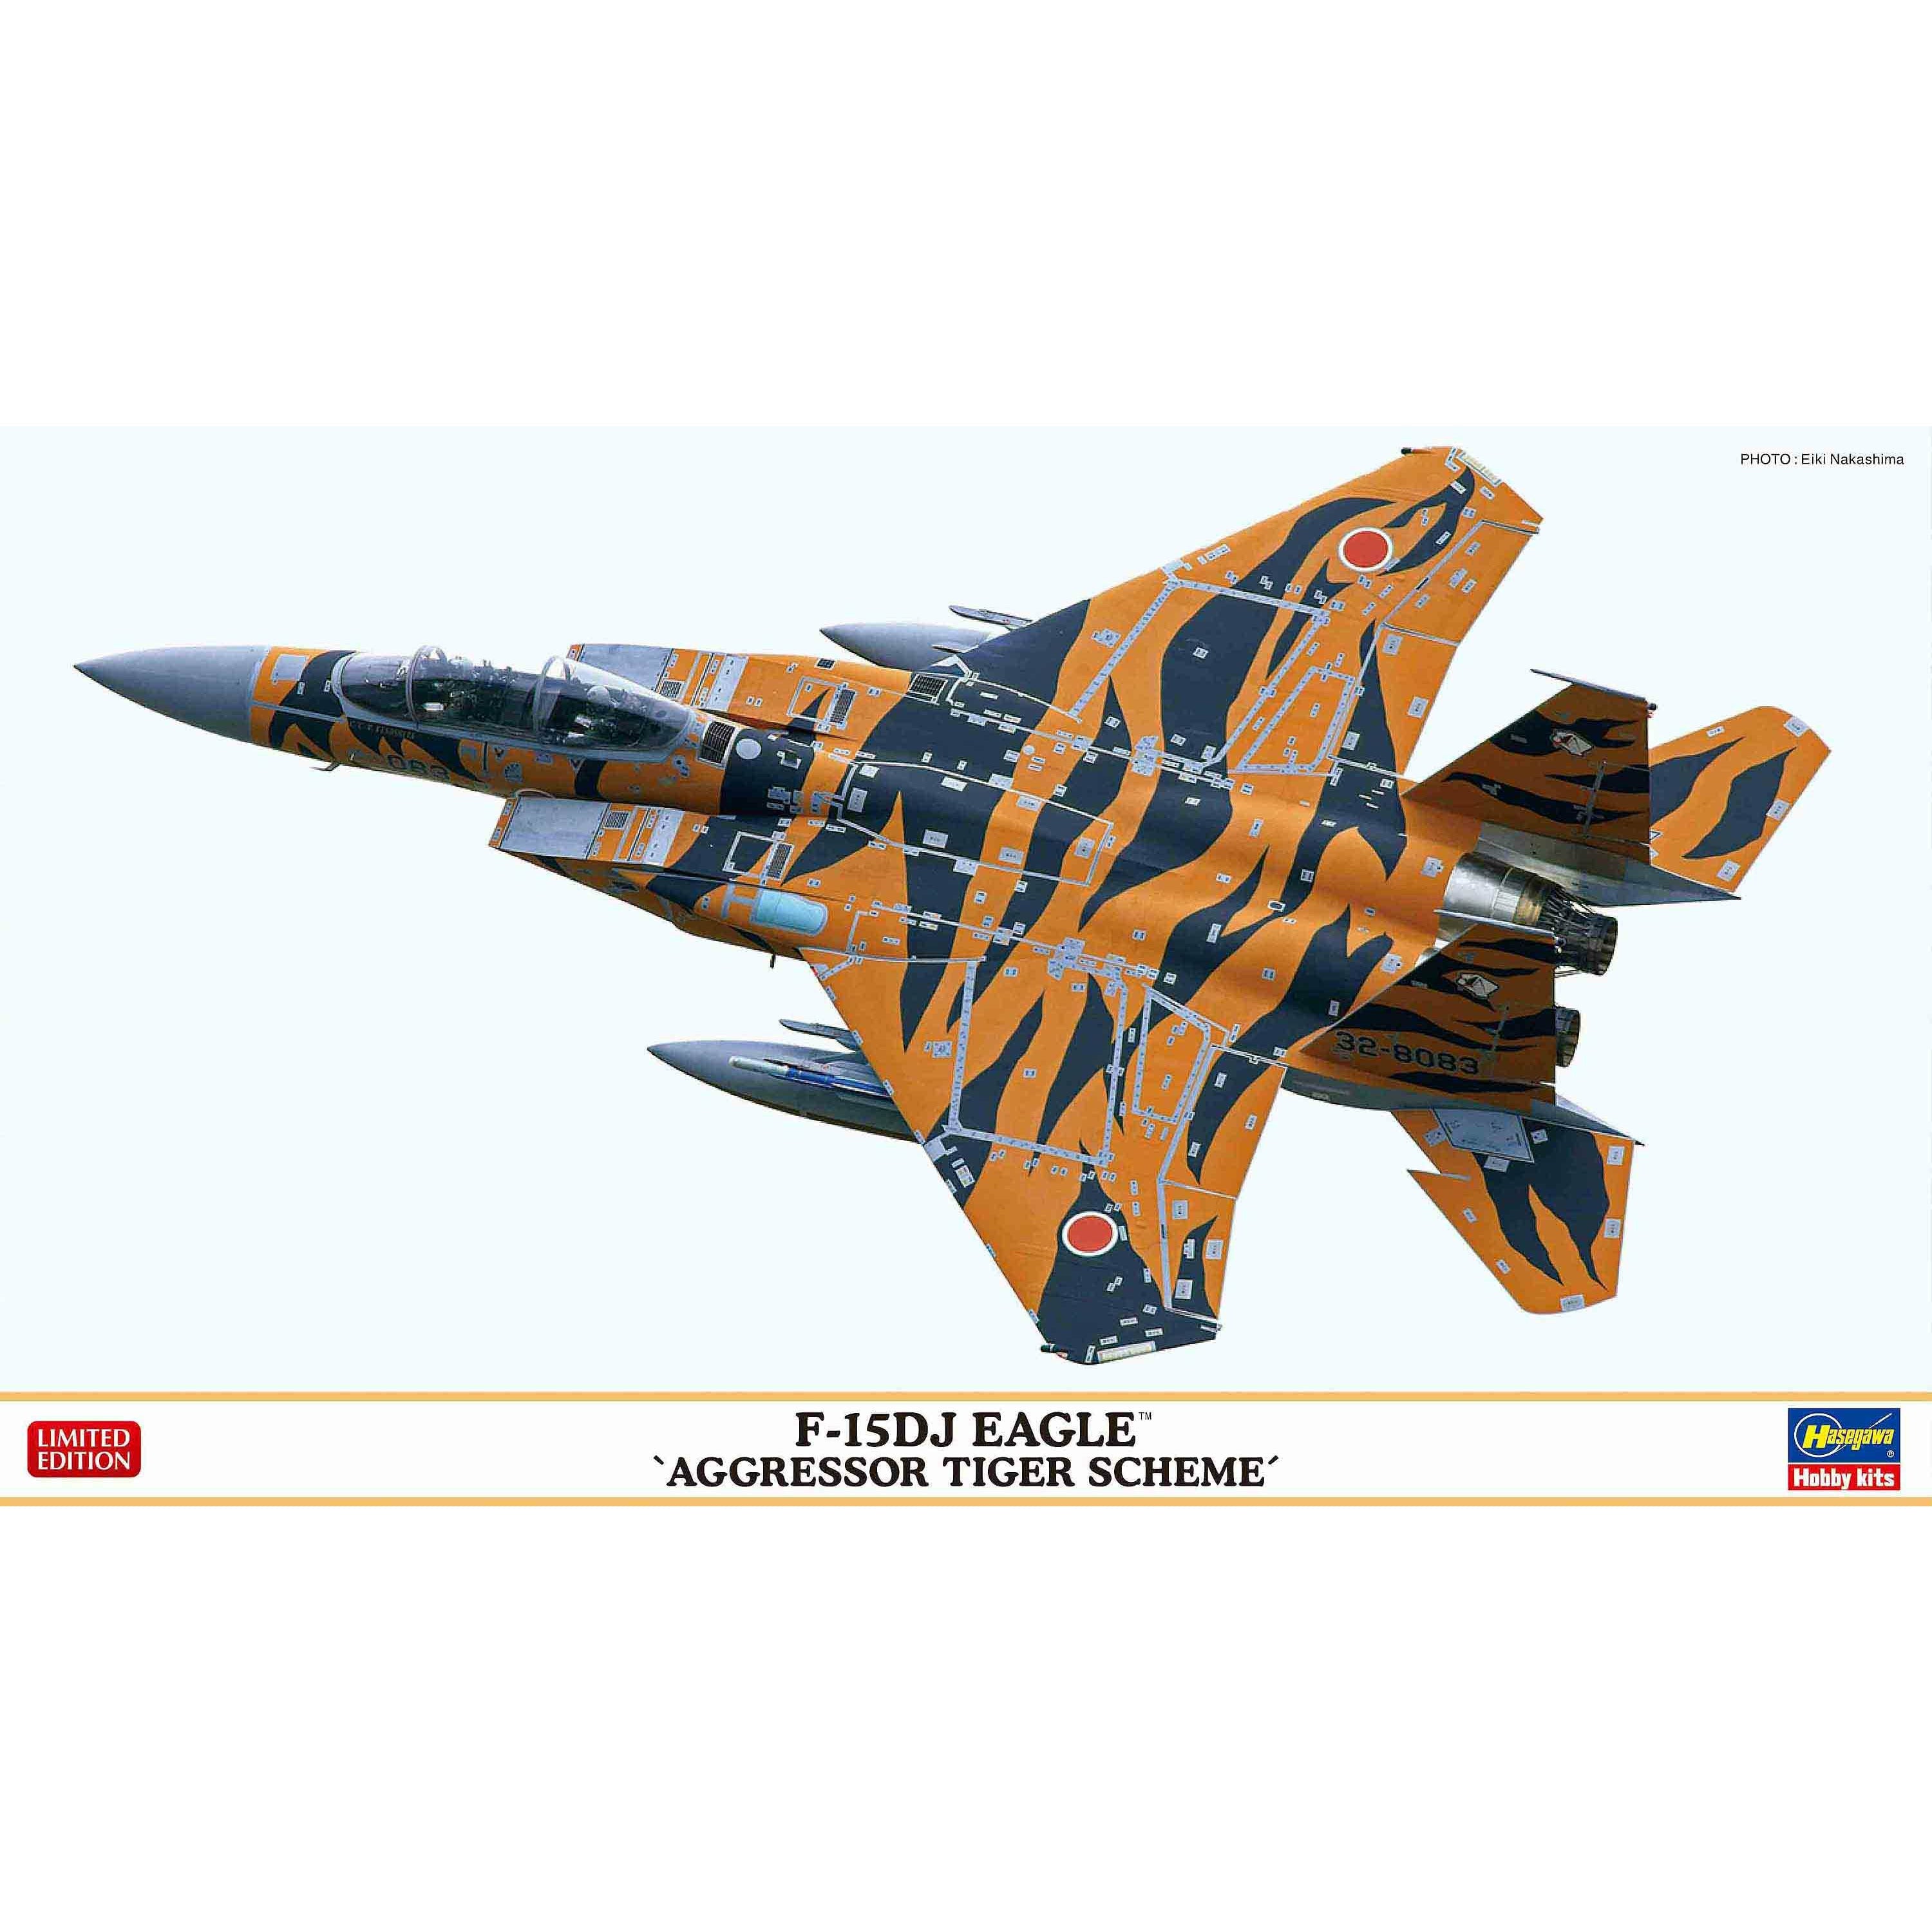 F-15DJ Eagle 'Aggressor Tiger Scheme' 1/72 #2392 by Hasegawa